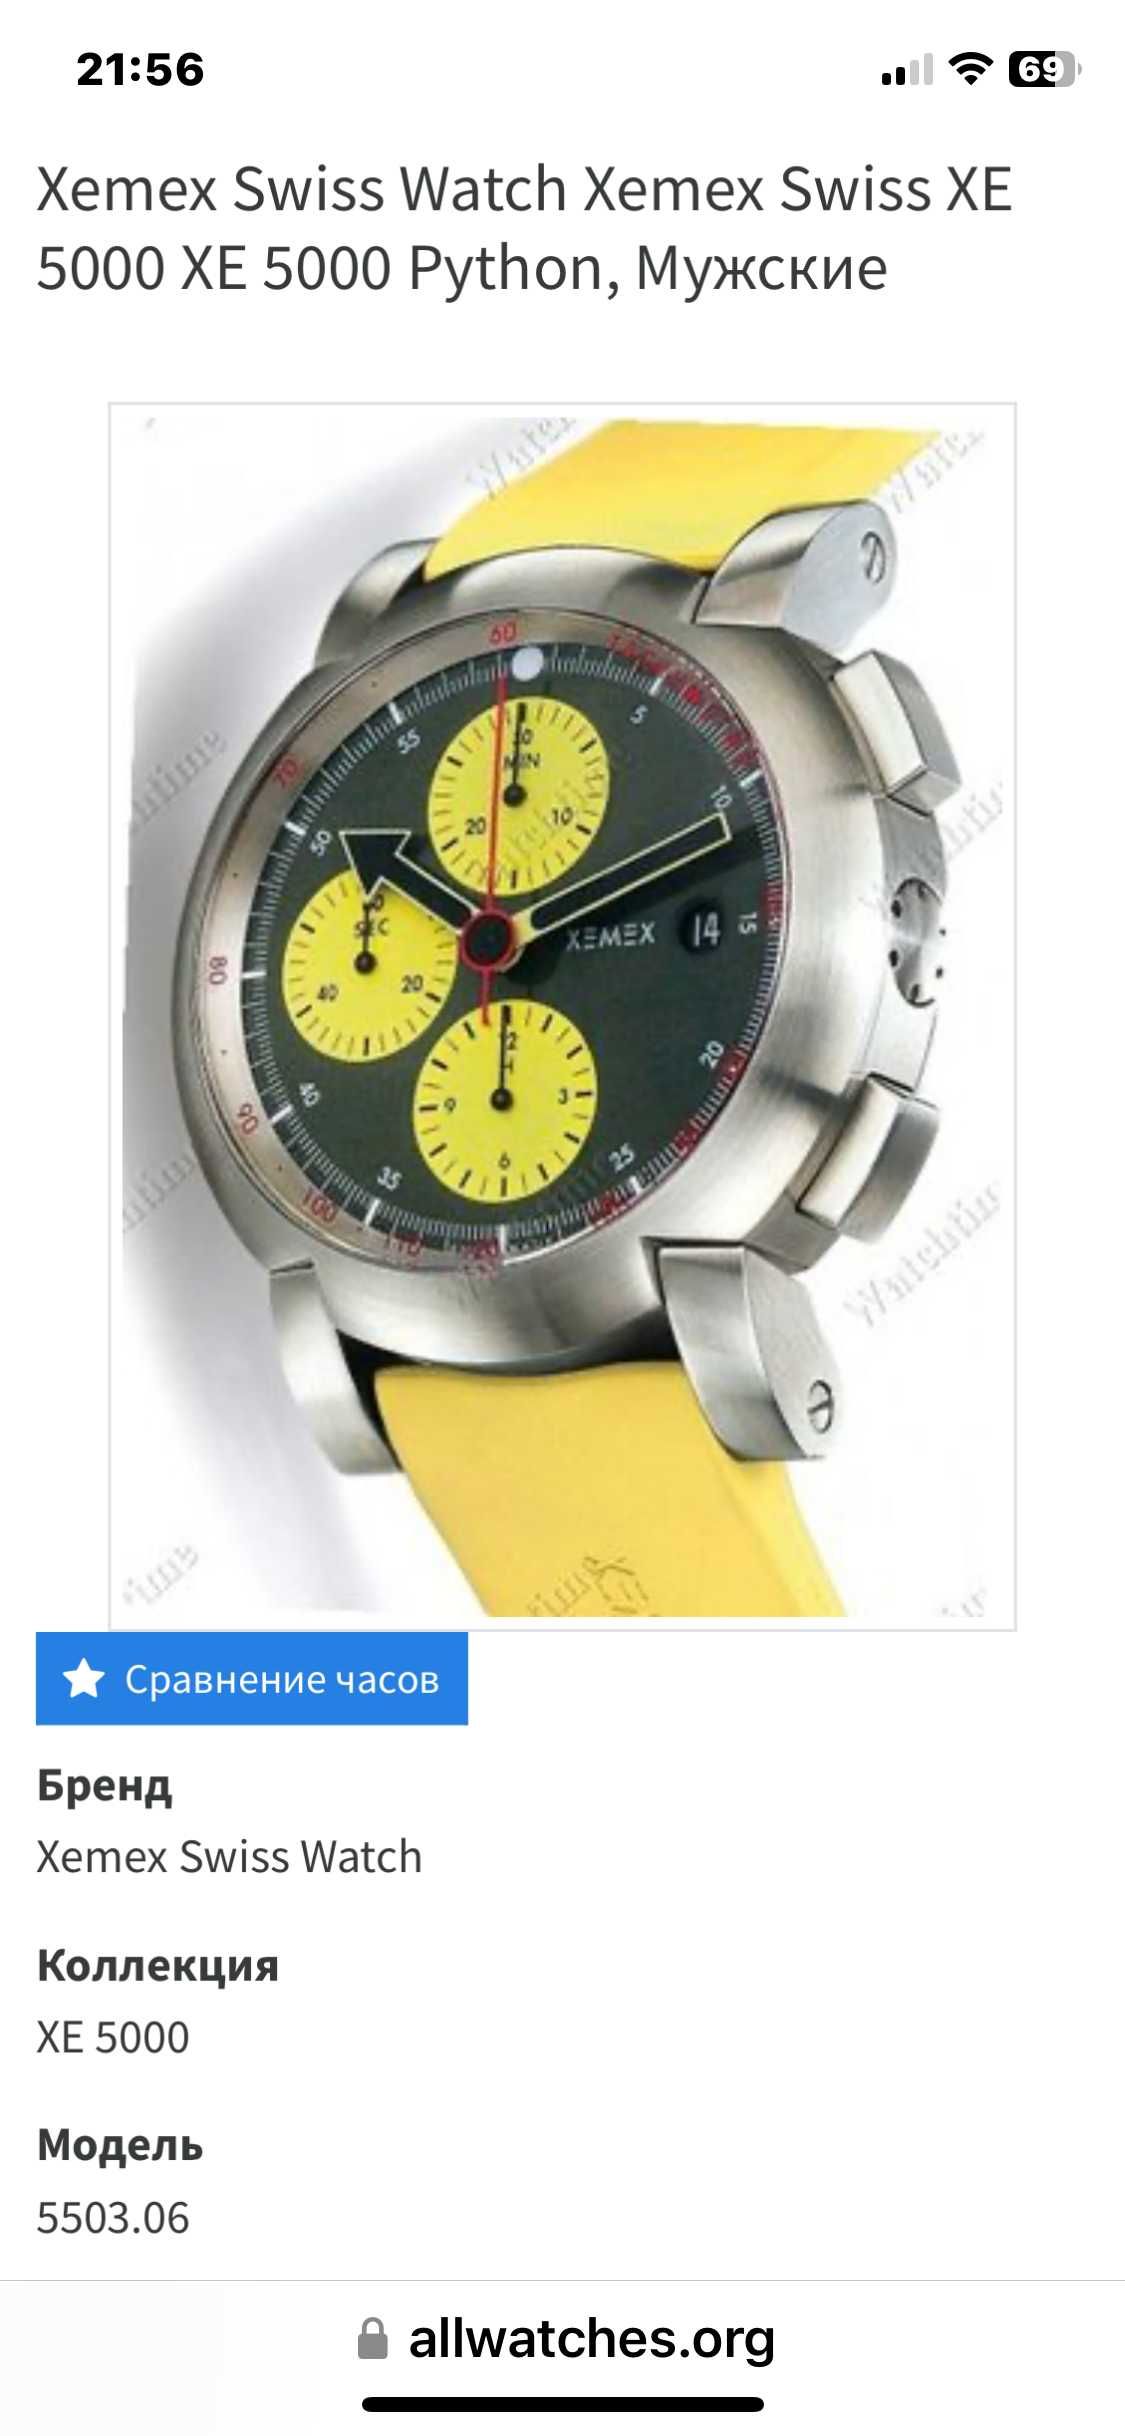 Швейцарские механические часы ХЕМЕХ ХЕ 5000